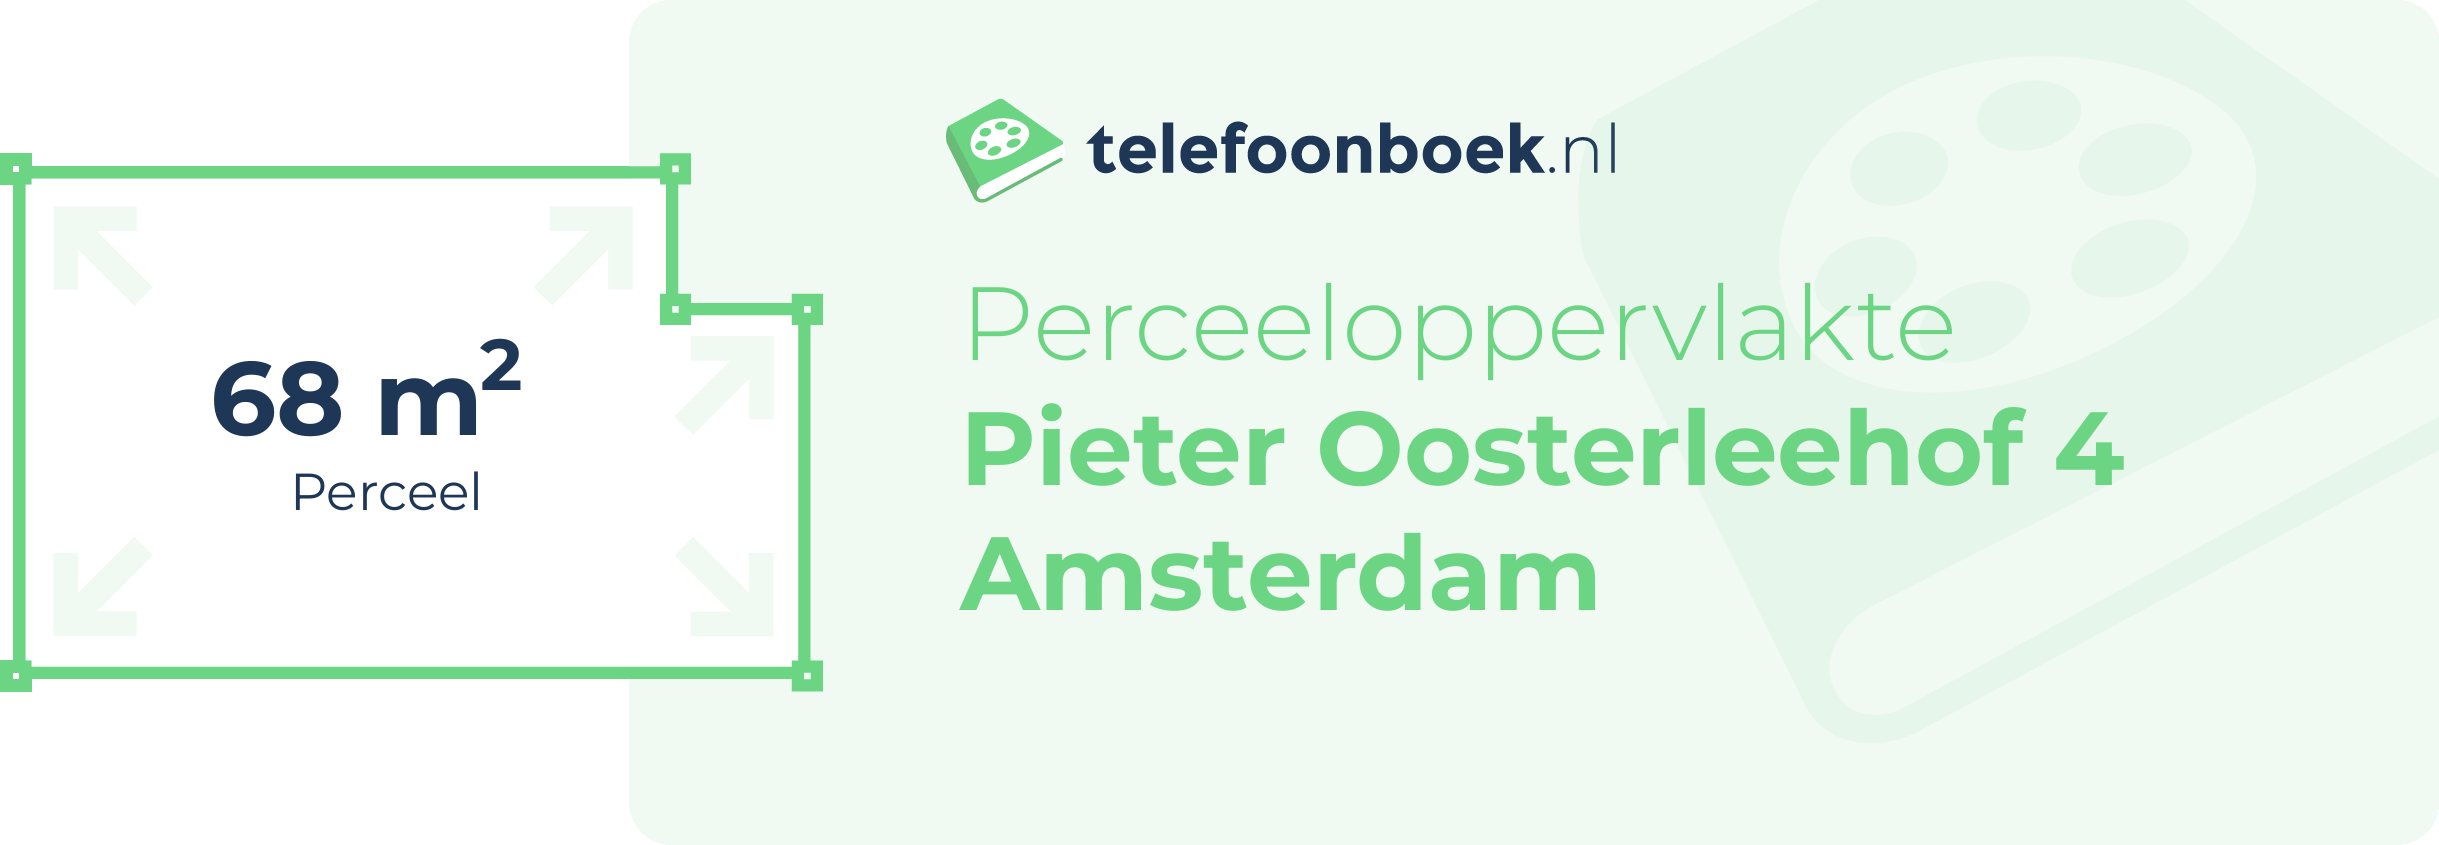 Perceeloppervlakte Pieter Oosterleehof 4 Amsterdam